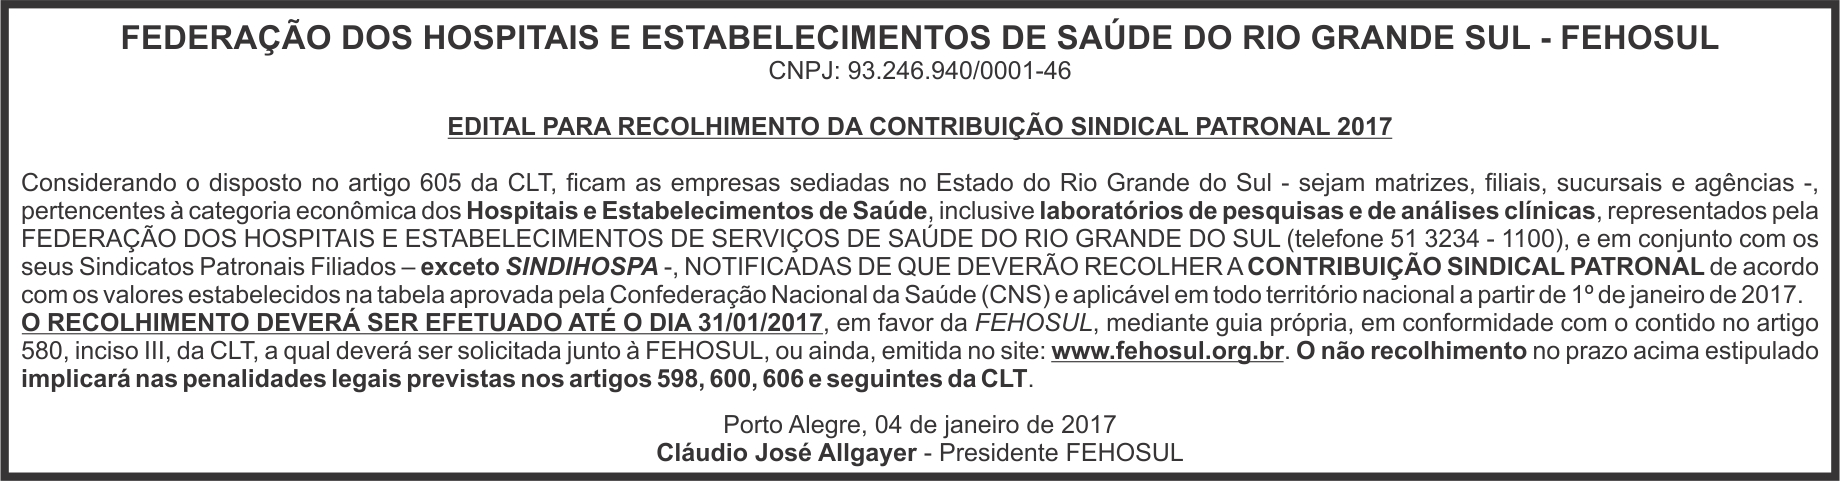 01_04_2017_edital_recolhimento_contribuição_Jornal_Comercio